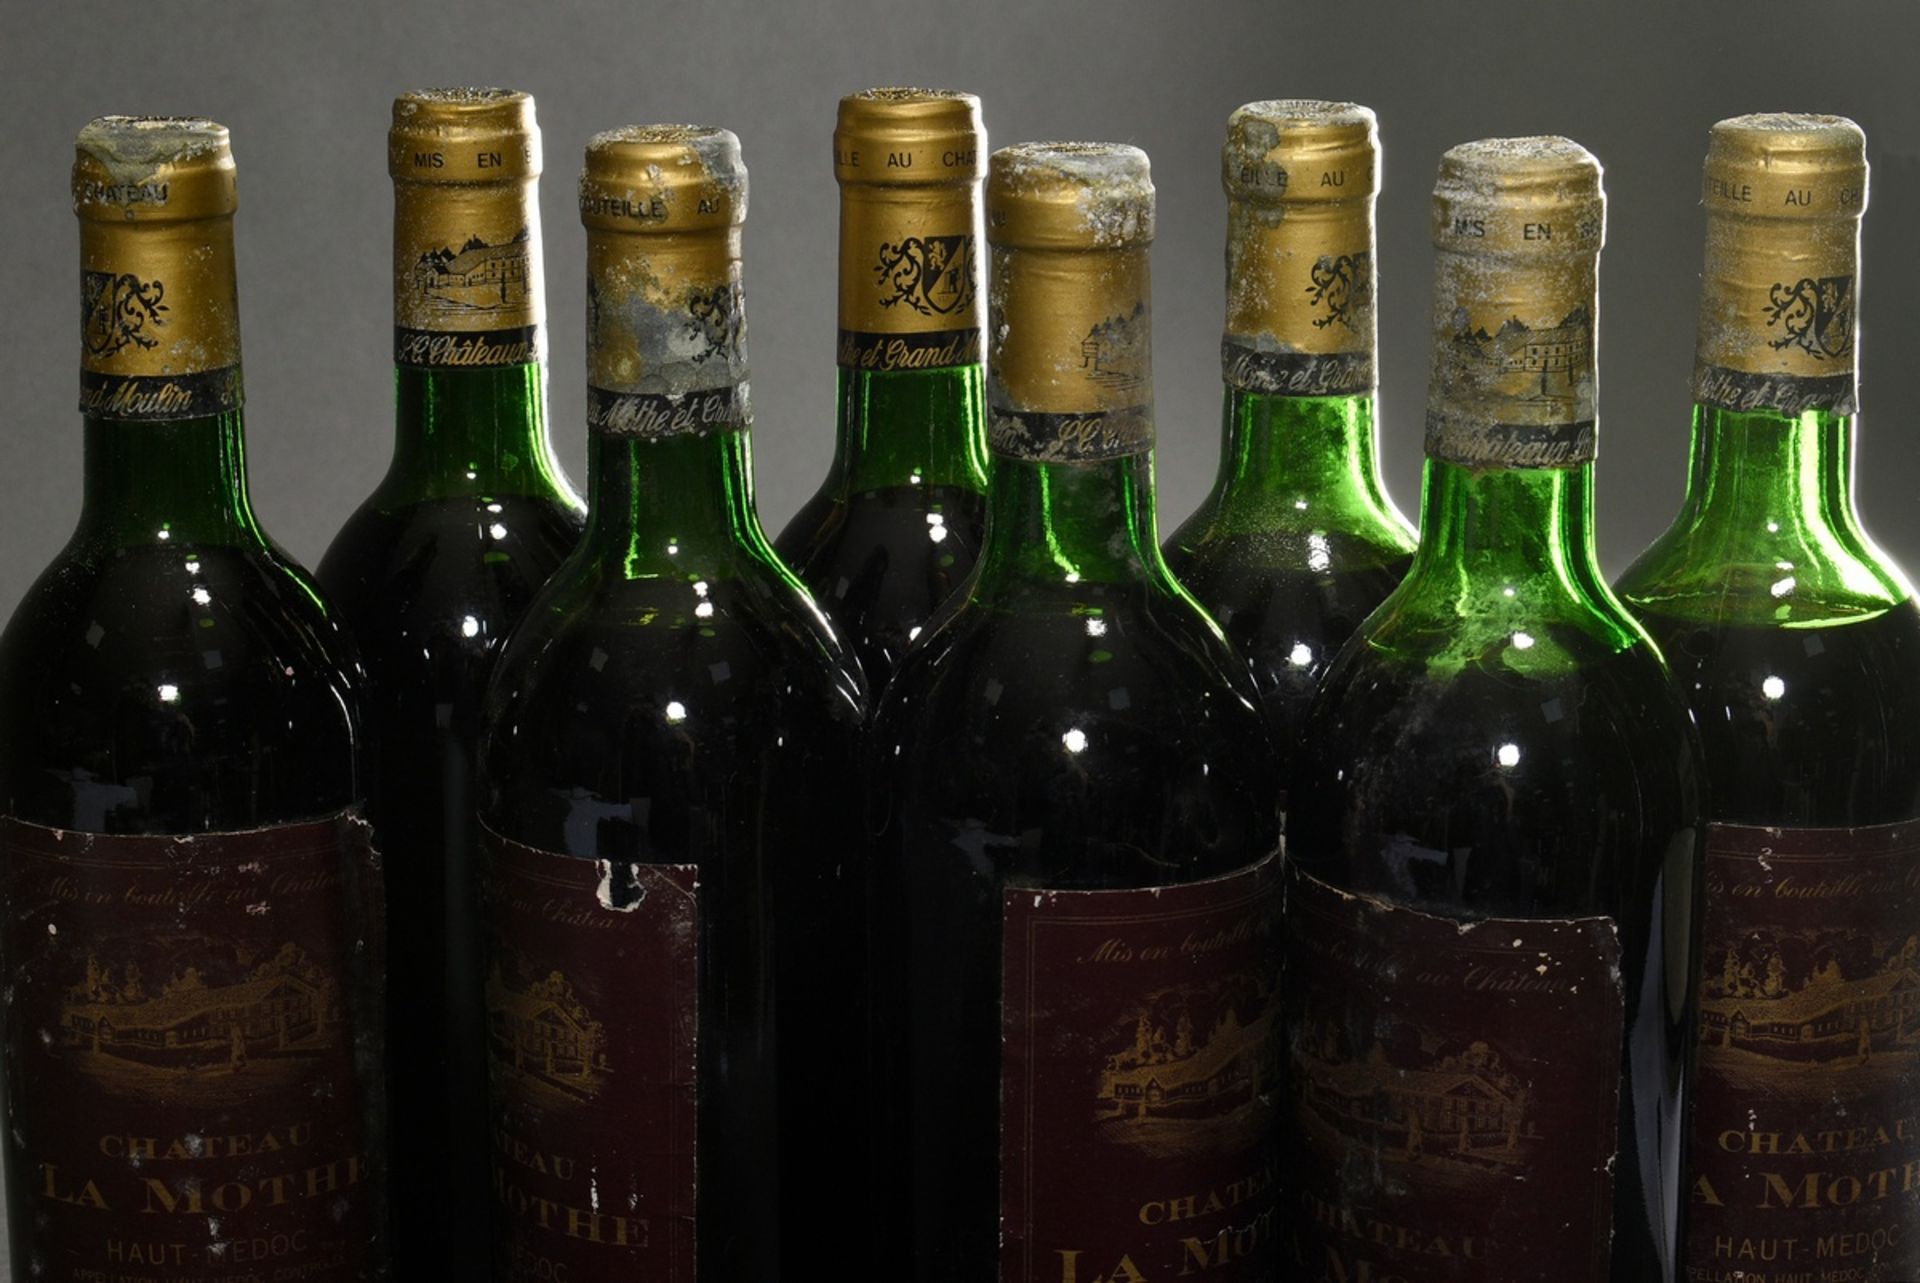 6 Flaschen 1985 Chateau La Mothe, mebac, Haut Medoc, Frankreich, Rotwein, 0,75l, durchgehend gute K - Bild 4 aus 5